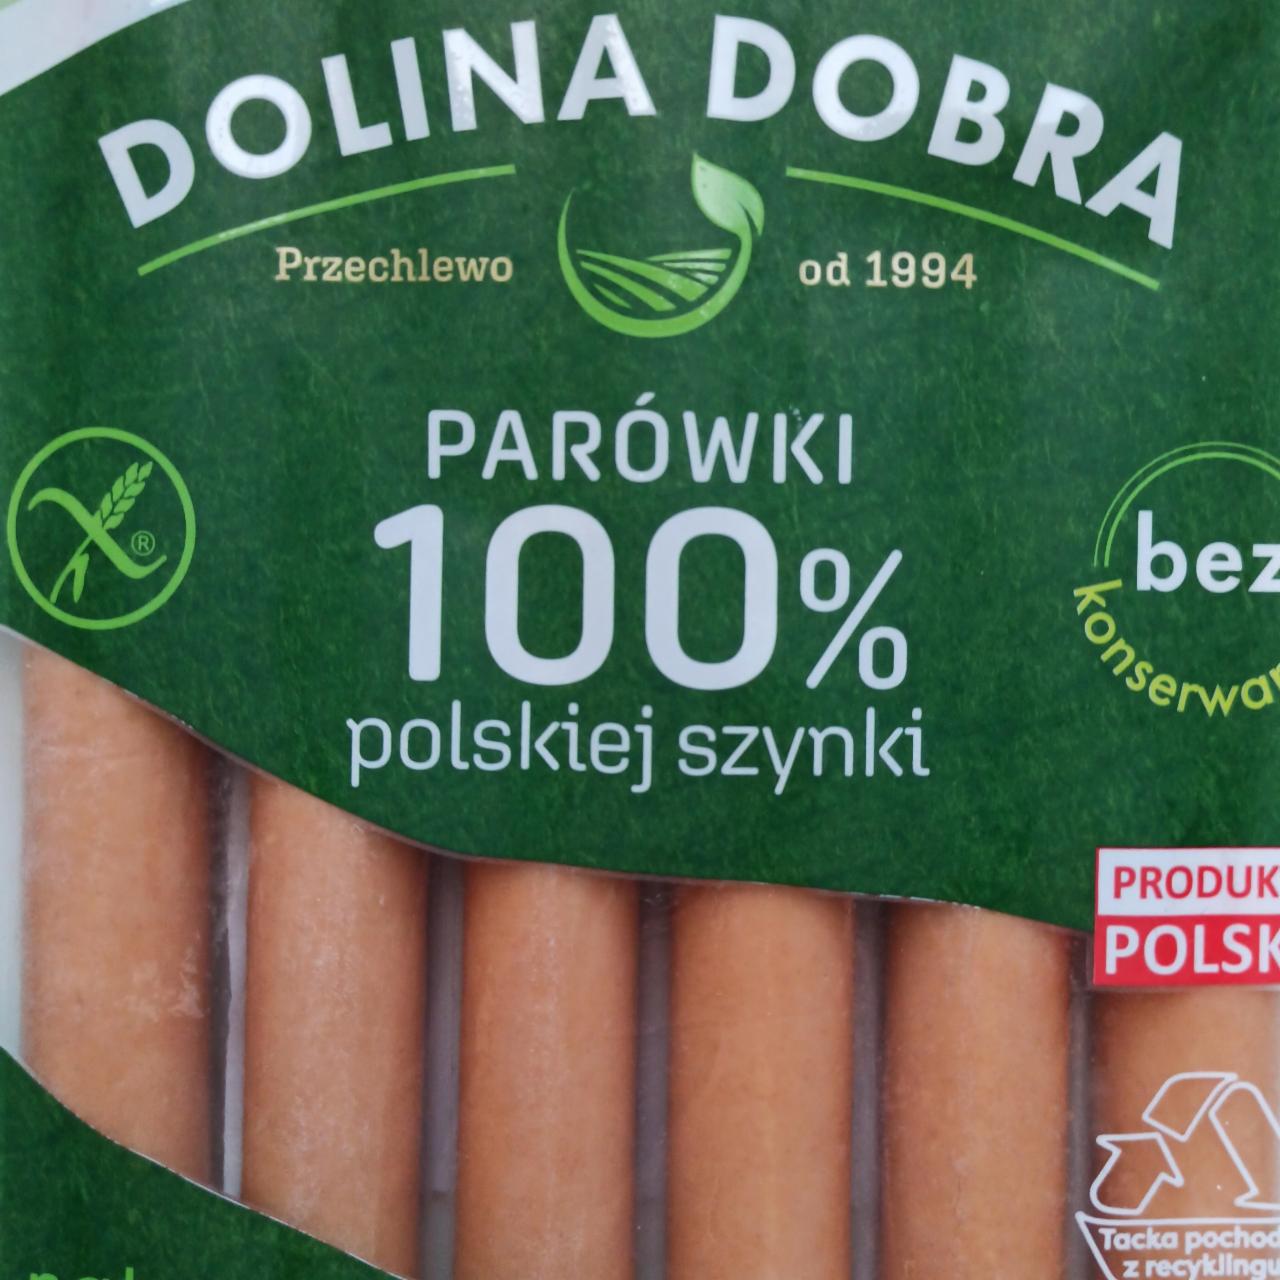 Fotografie - Parowki 100% polské szynki Dolina Dobra